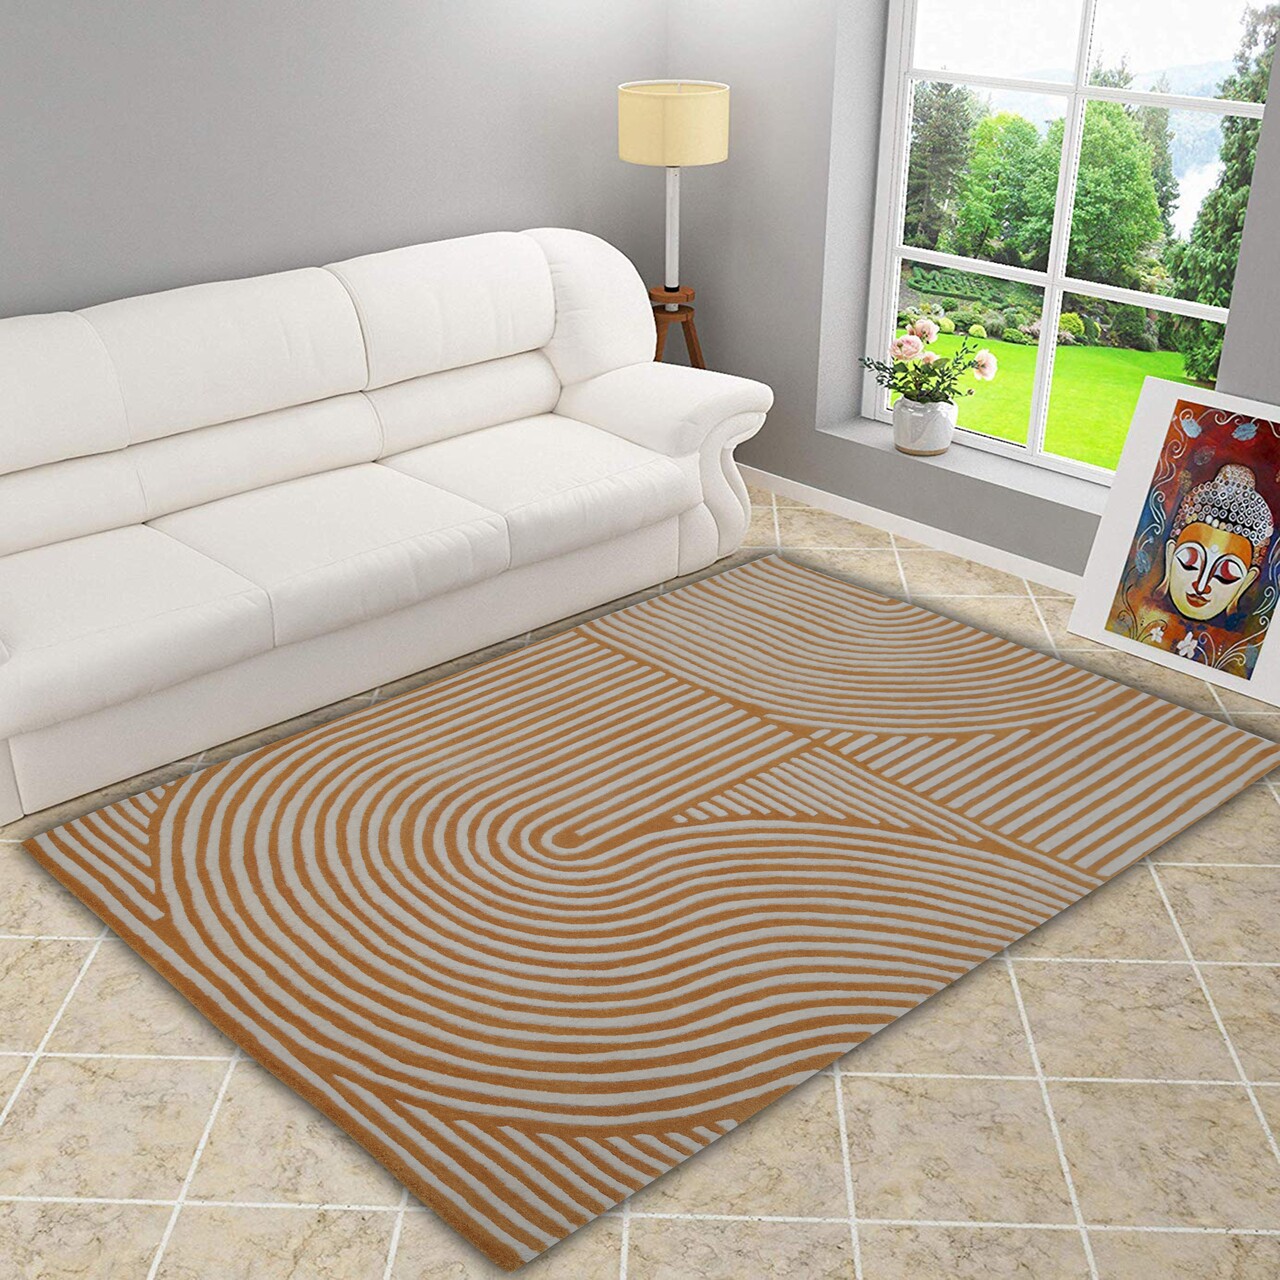 Maze bedora szőnyeg,160x230 cm, 100% gyapjú, színes, kézzel megmunkált